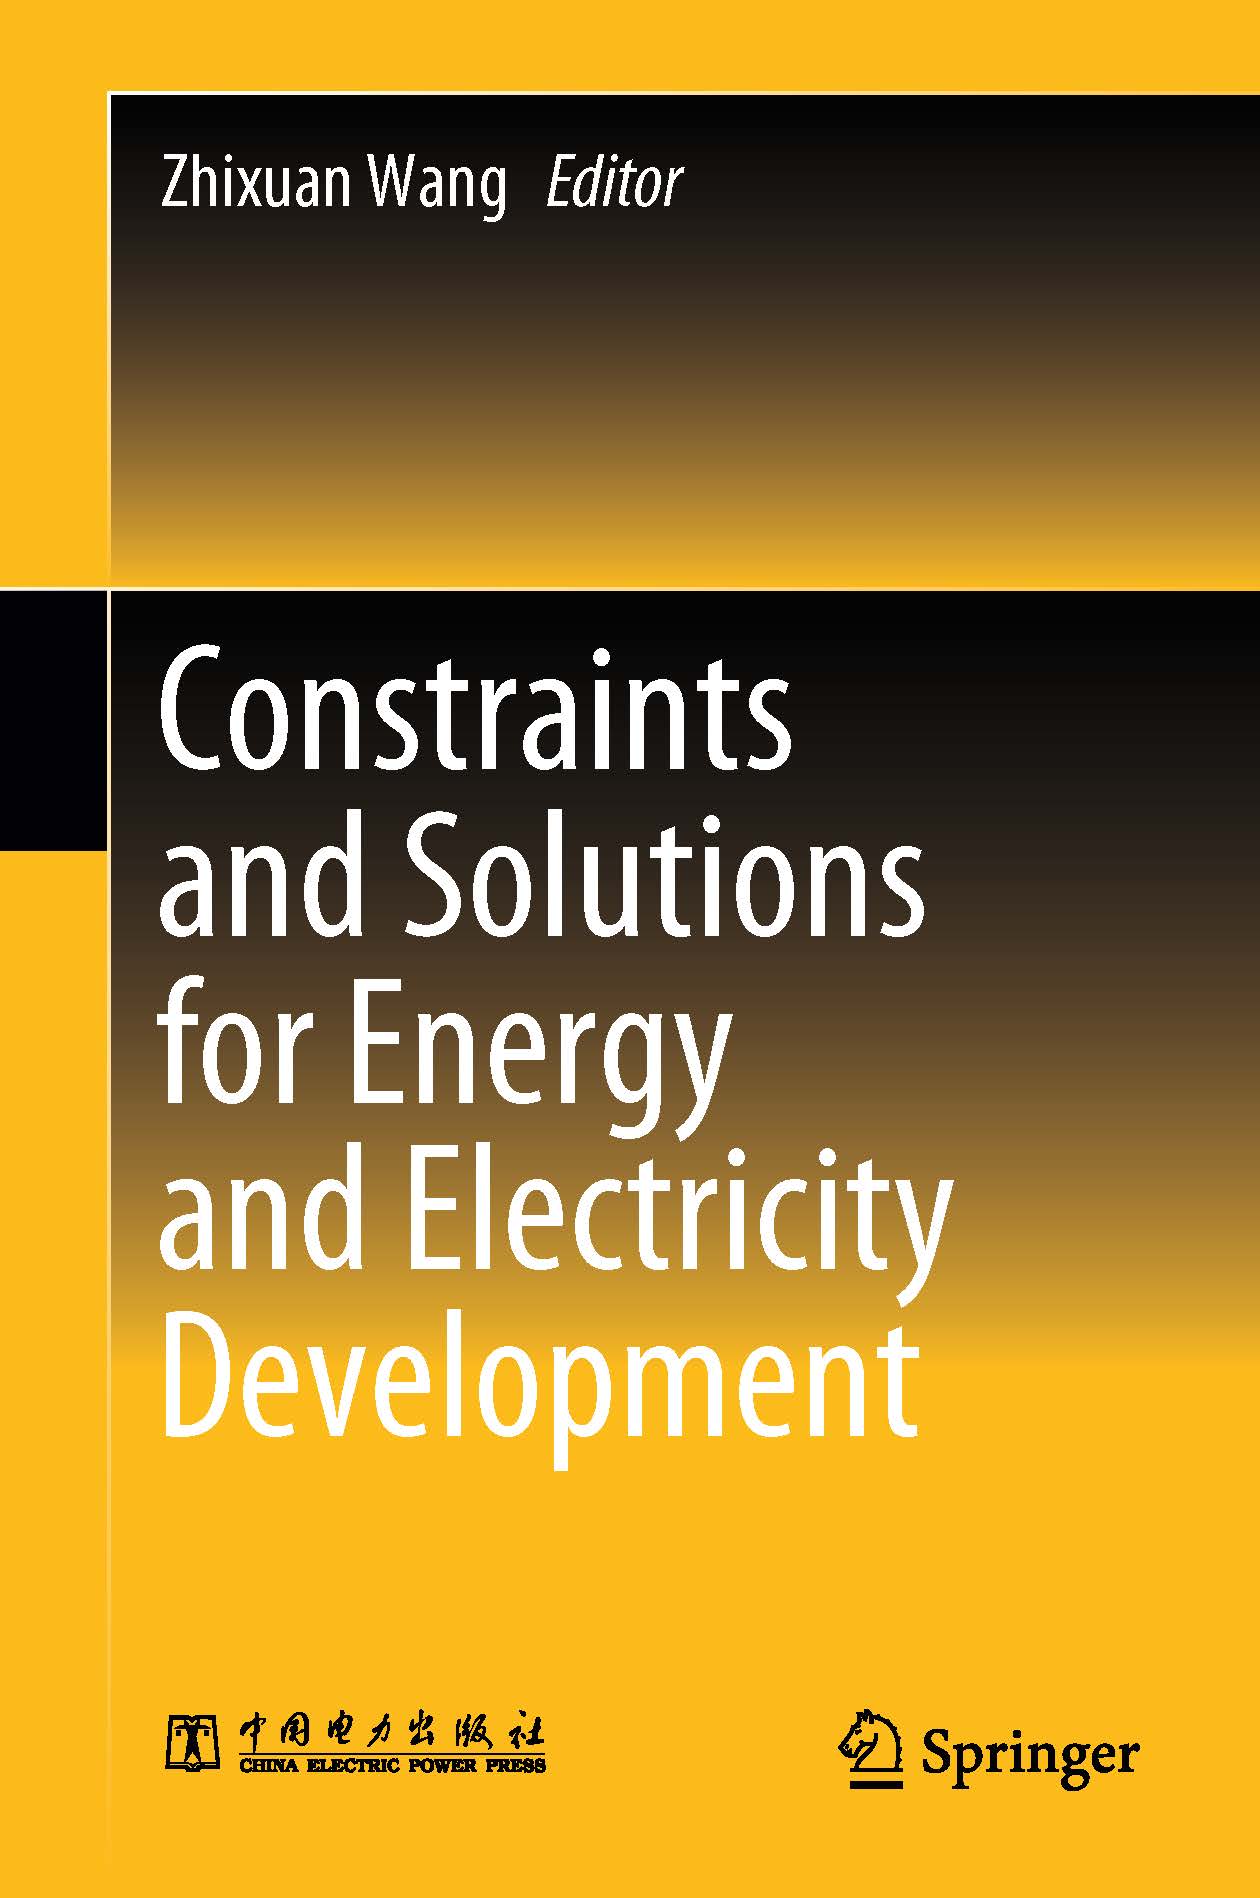 页面提取自－2019_Book_Constraints and Solutions for Energy and Electricity Development.jpg